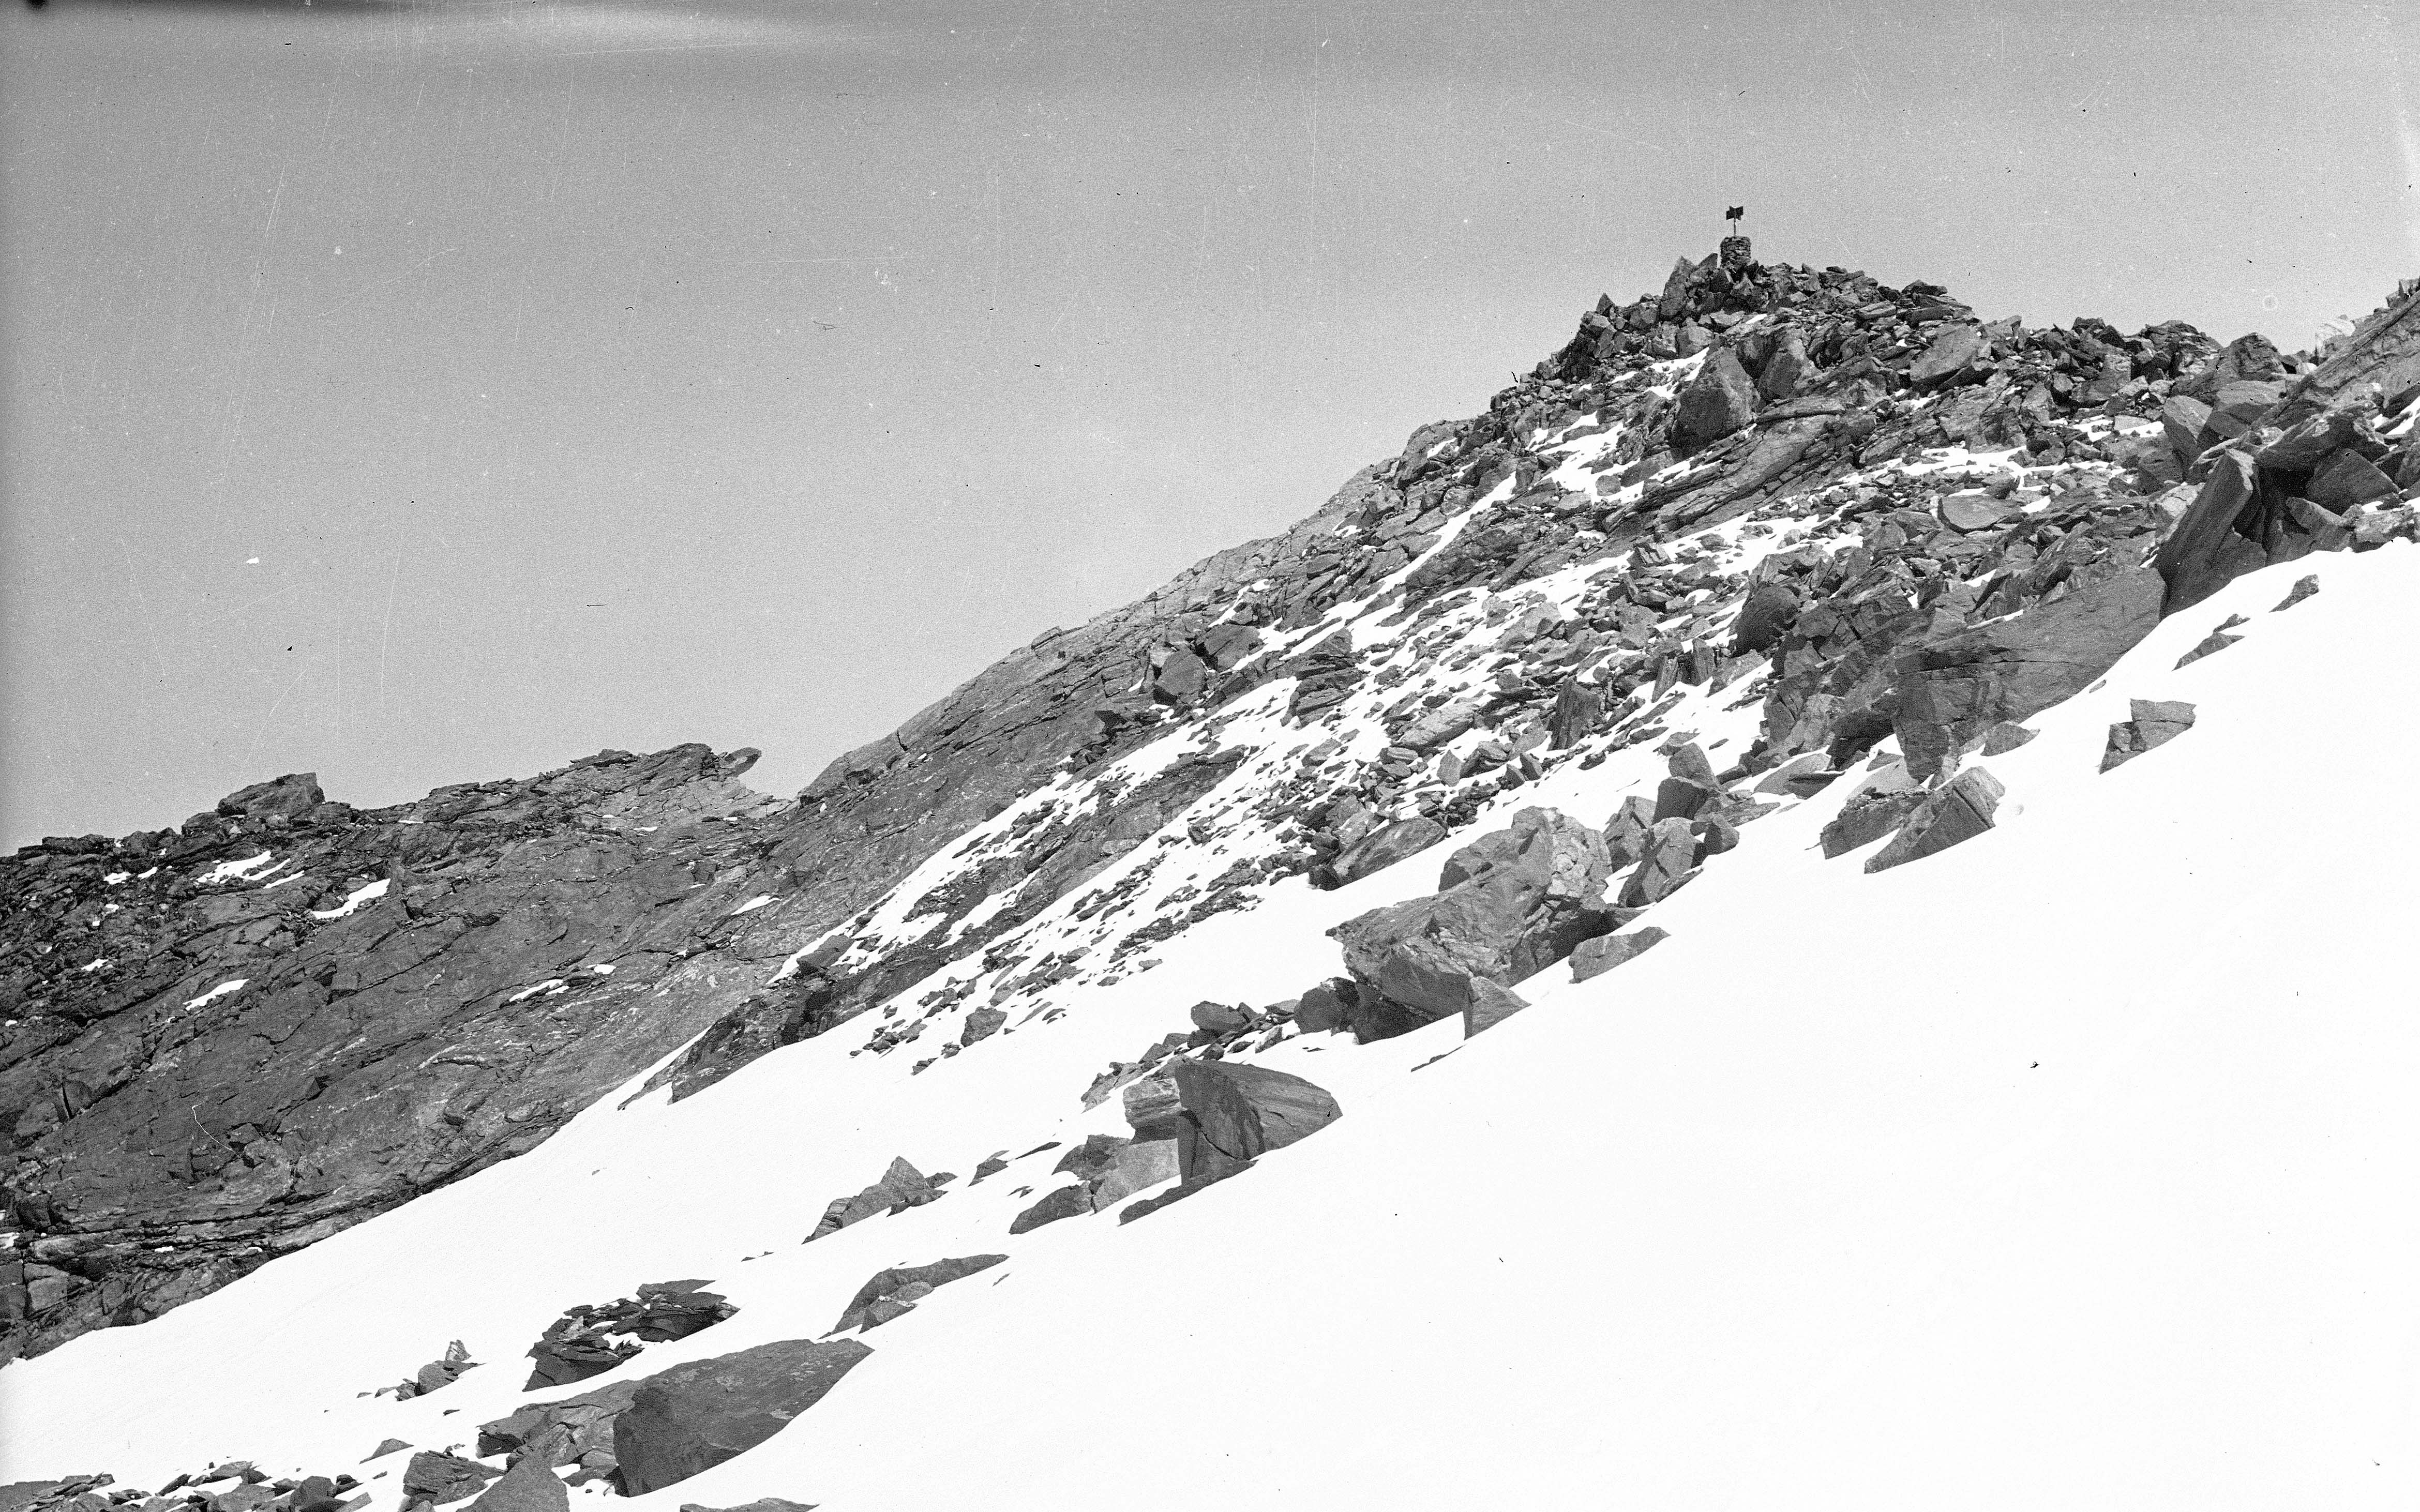 Gipfel der Rosablanche mit Vermessungssignal, Krete und Geröllfeld.